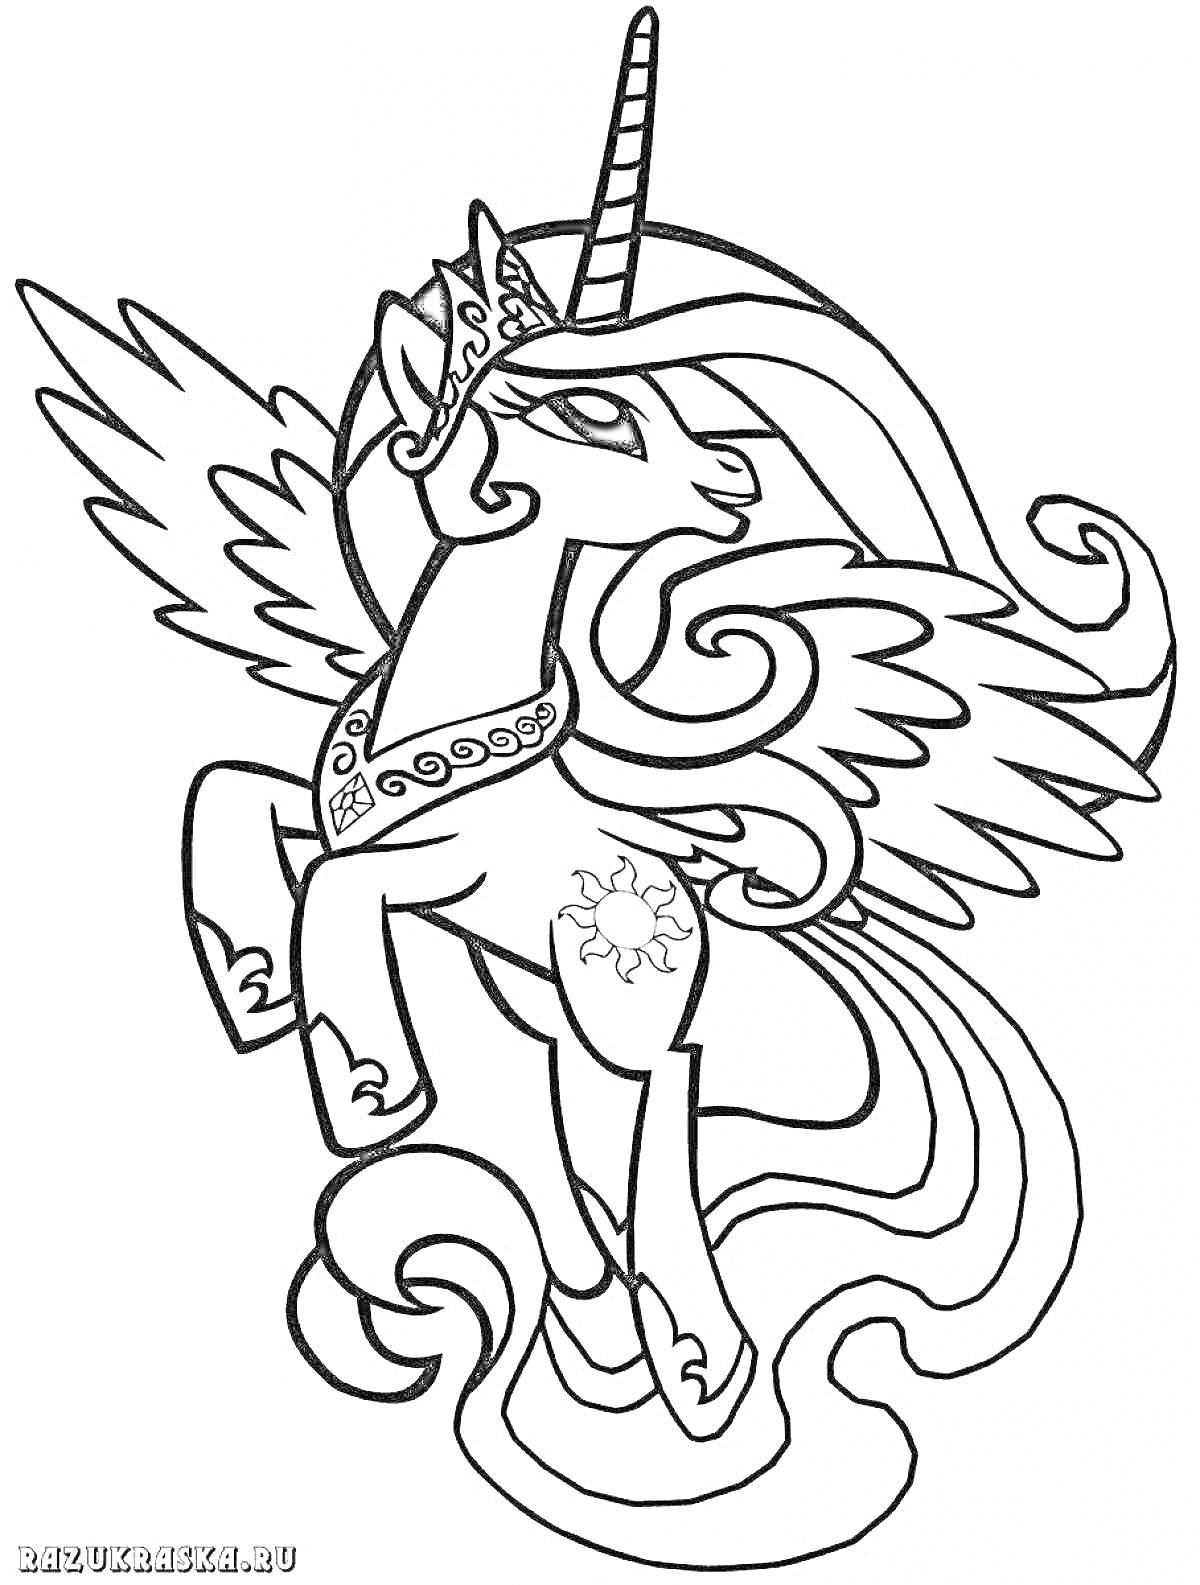 Принцесса Селестия с расправленными крыльями и короной на голове в полете